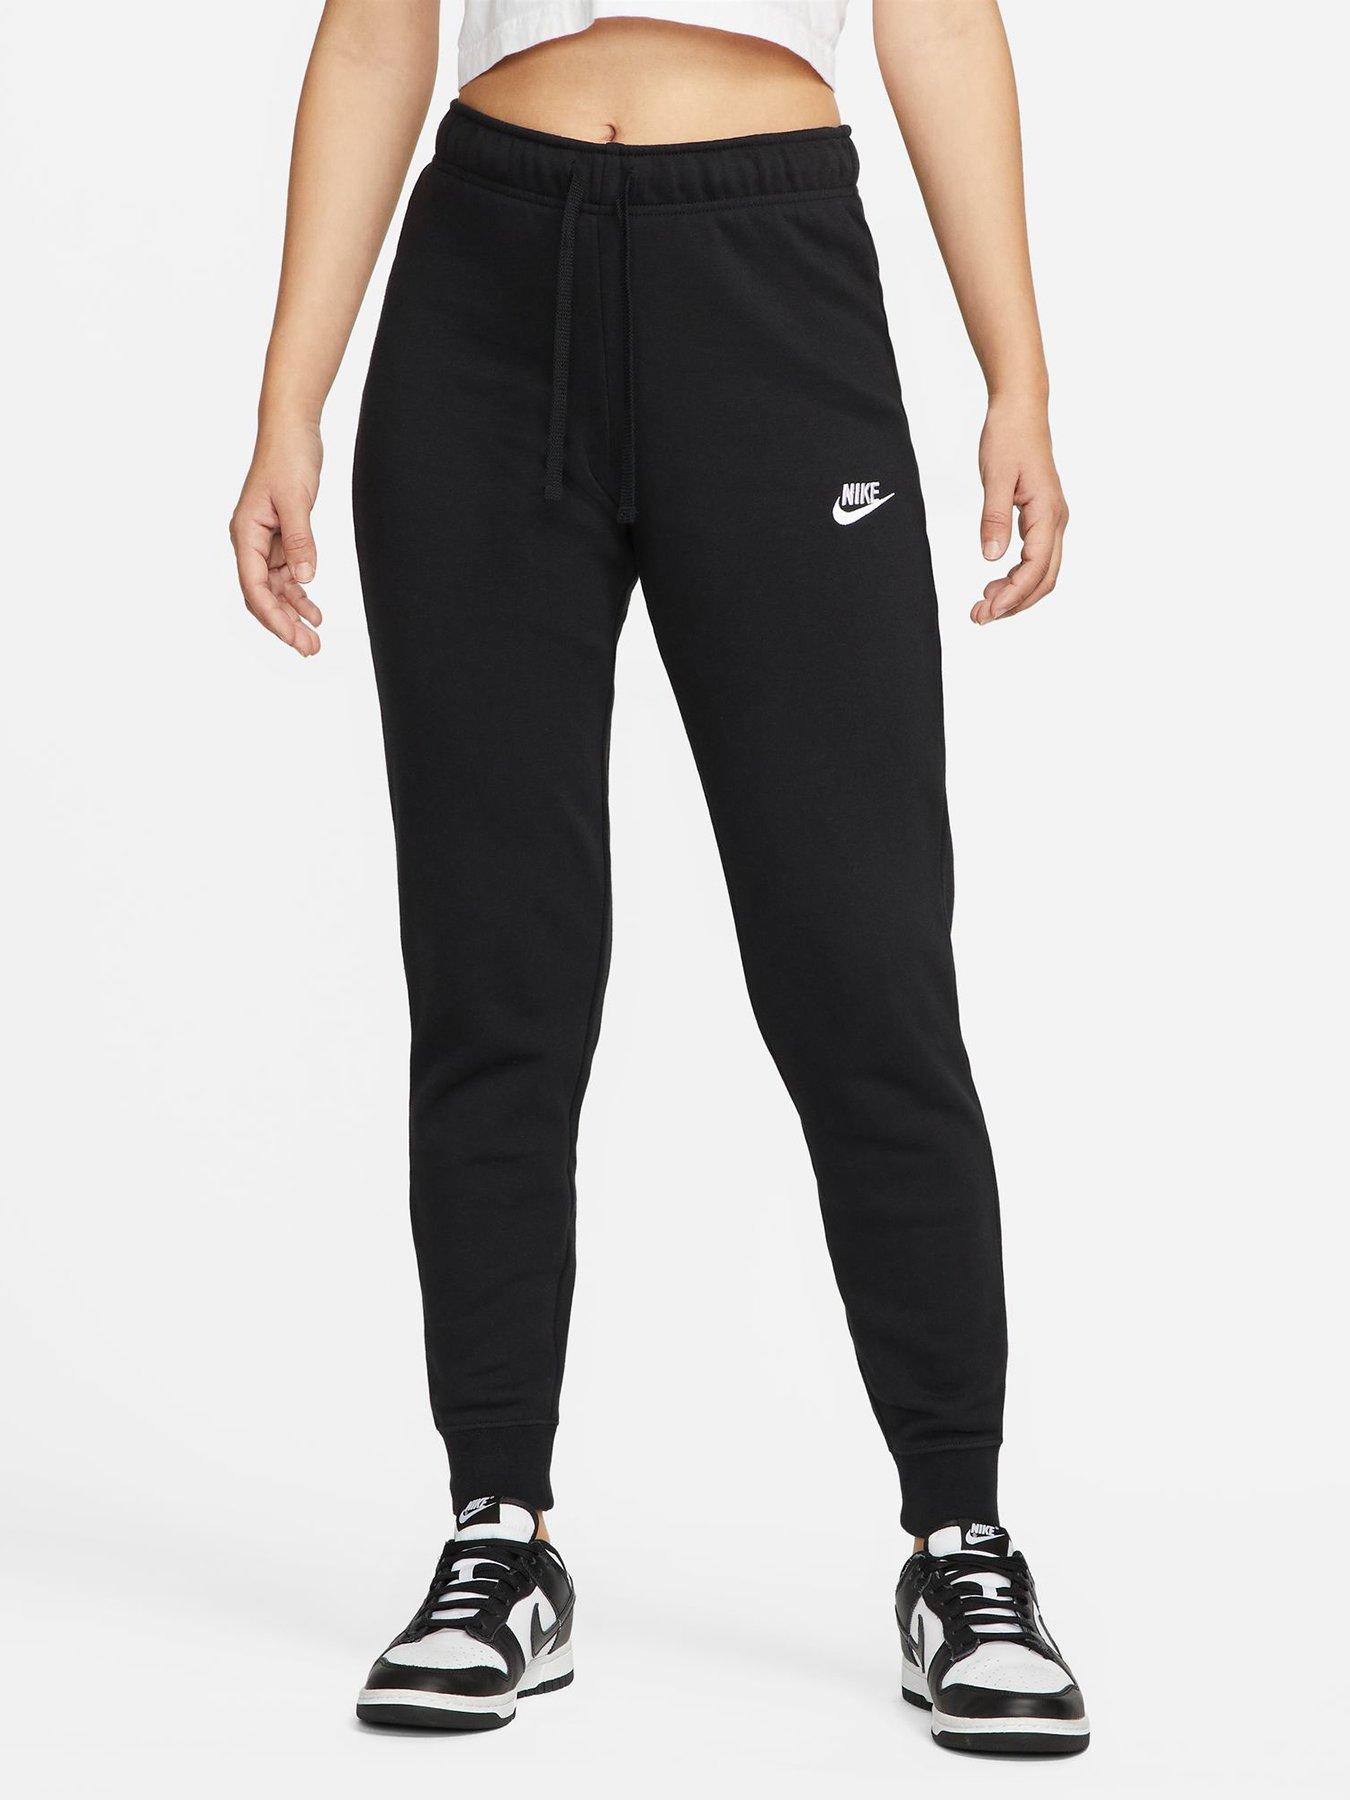 S, Jogging bottoms, Sportswear, Women, Nike